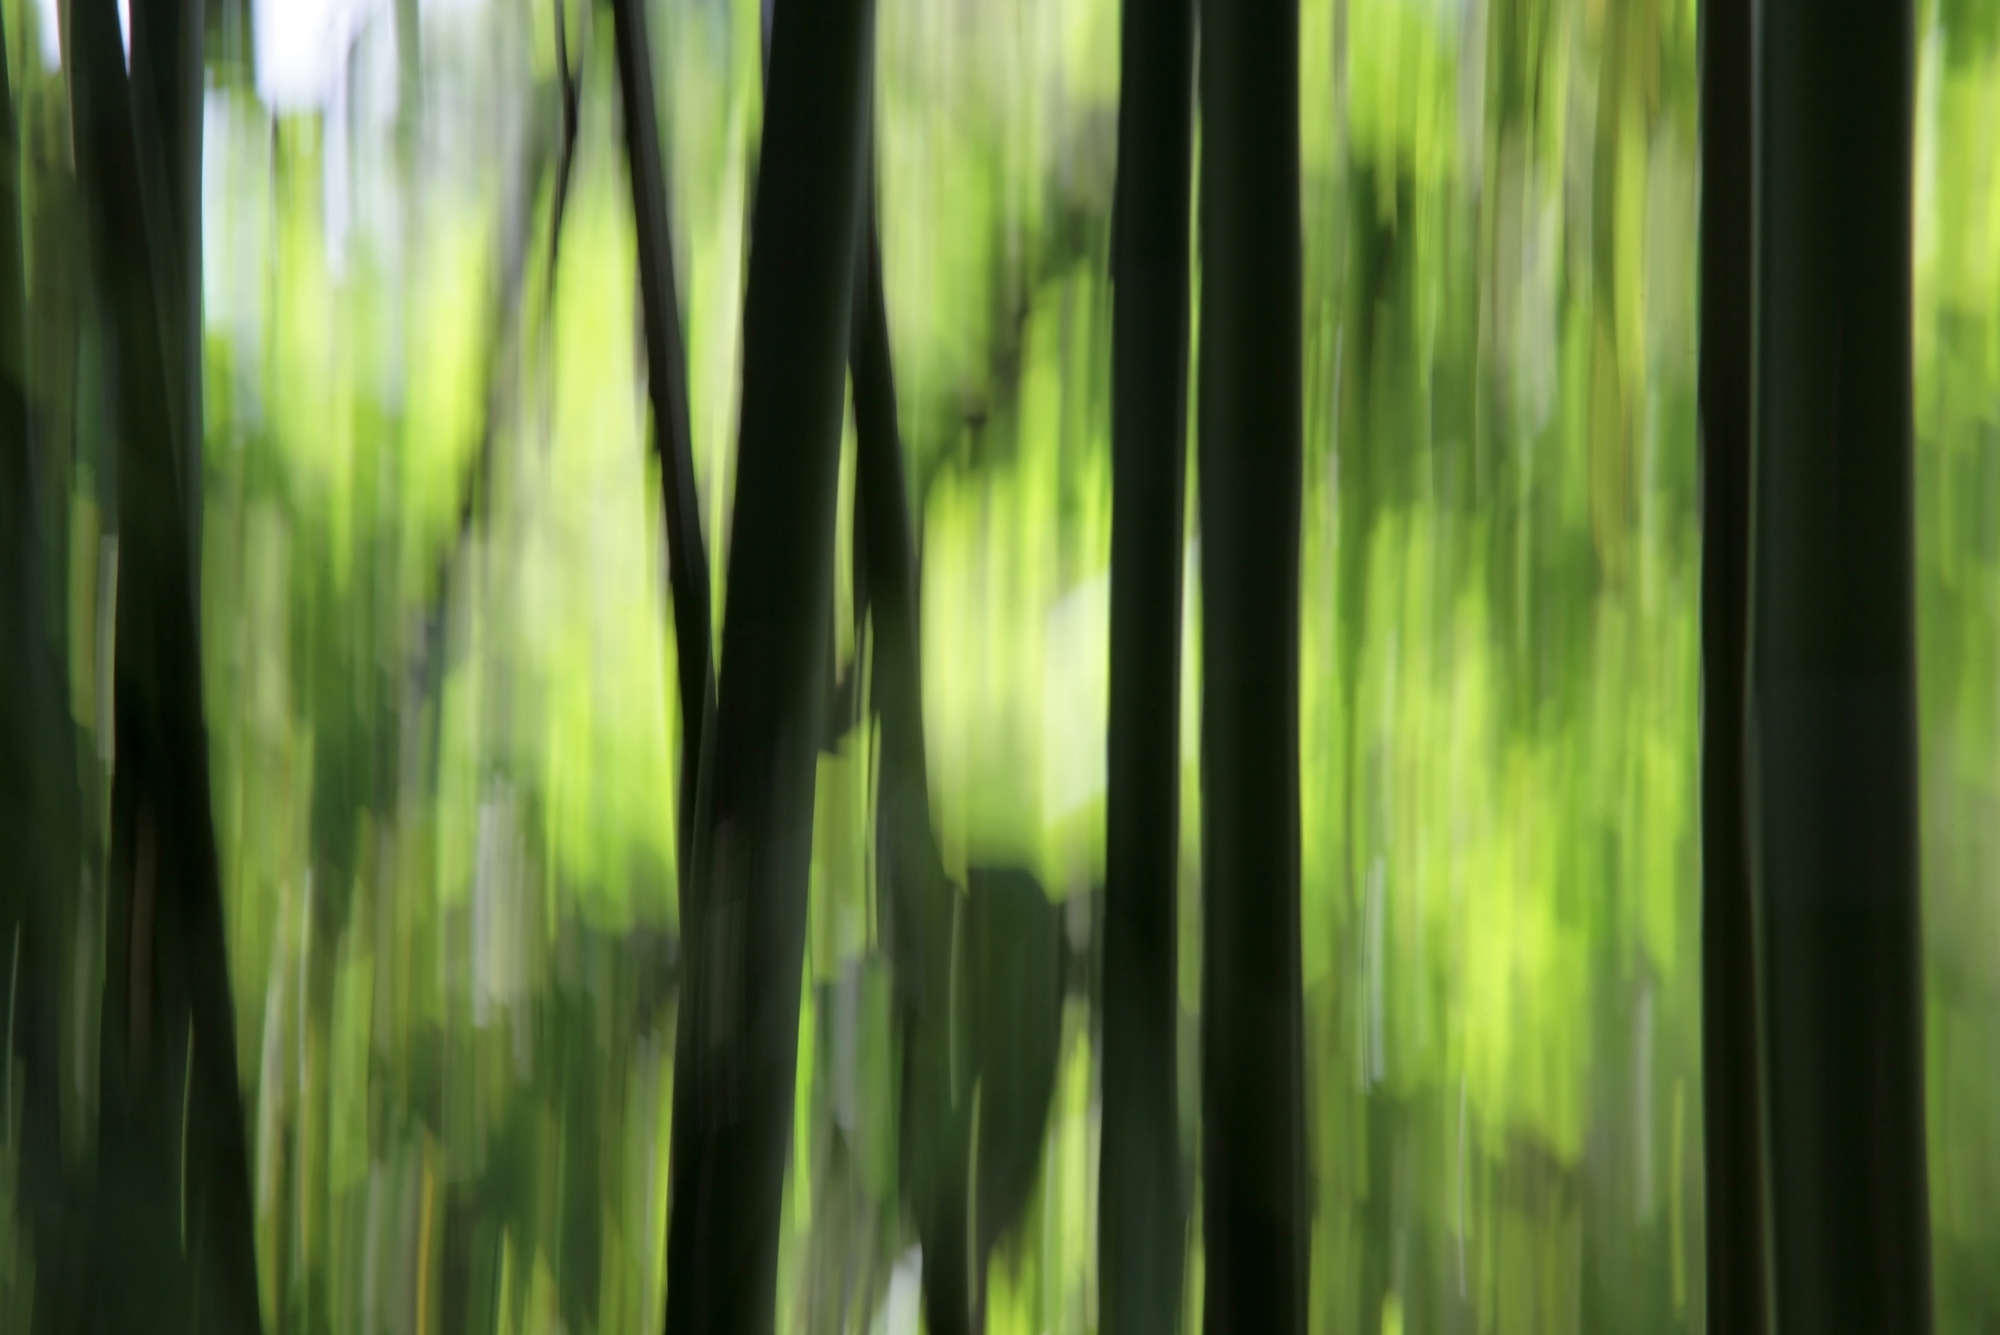             Fototapete verschwommener Bambus – Mattes Glattvlies
        